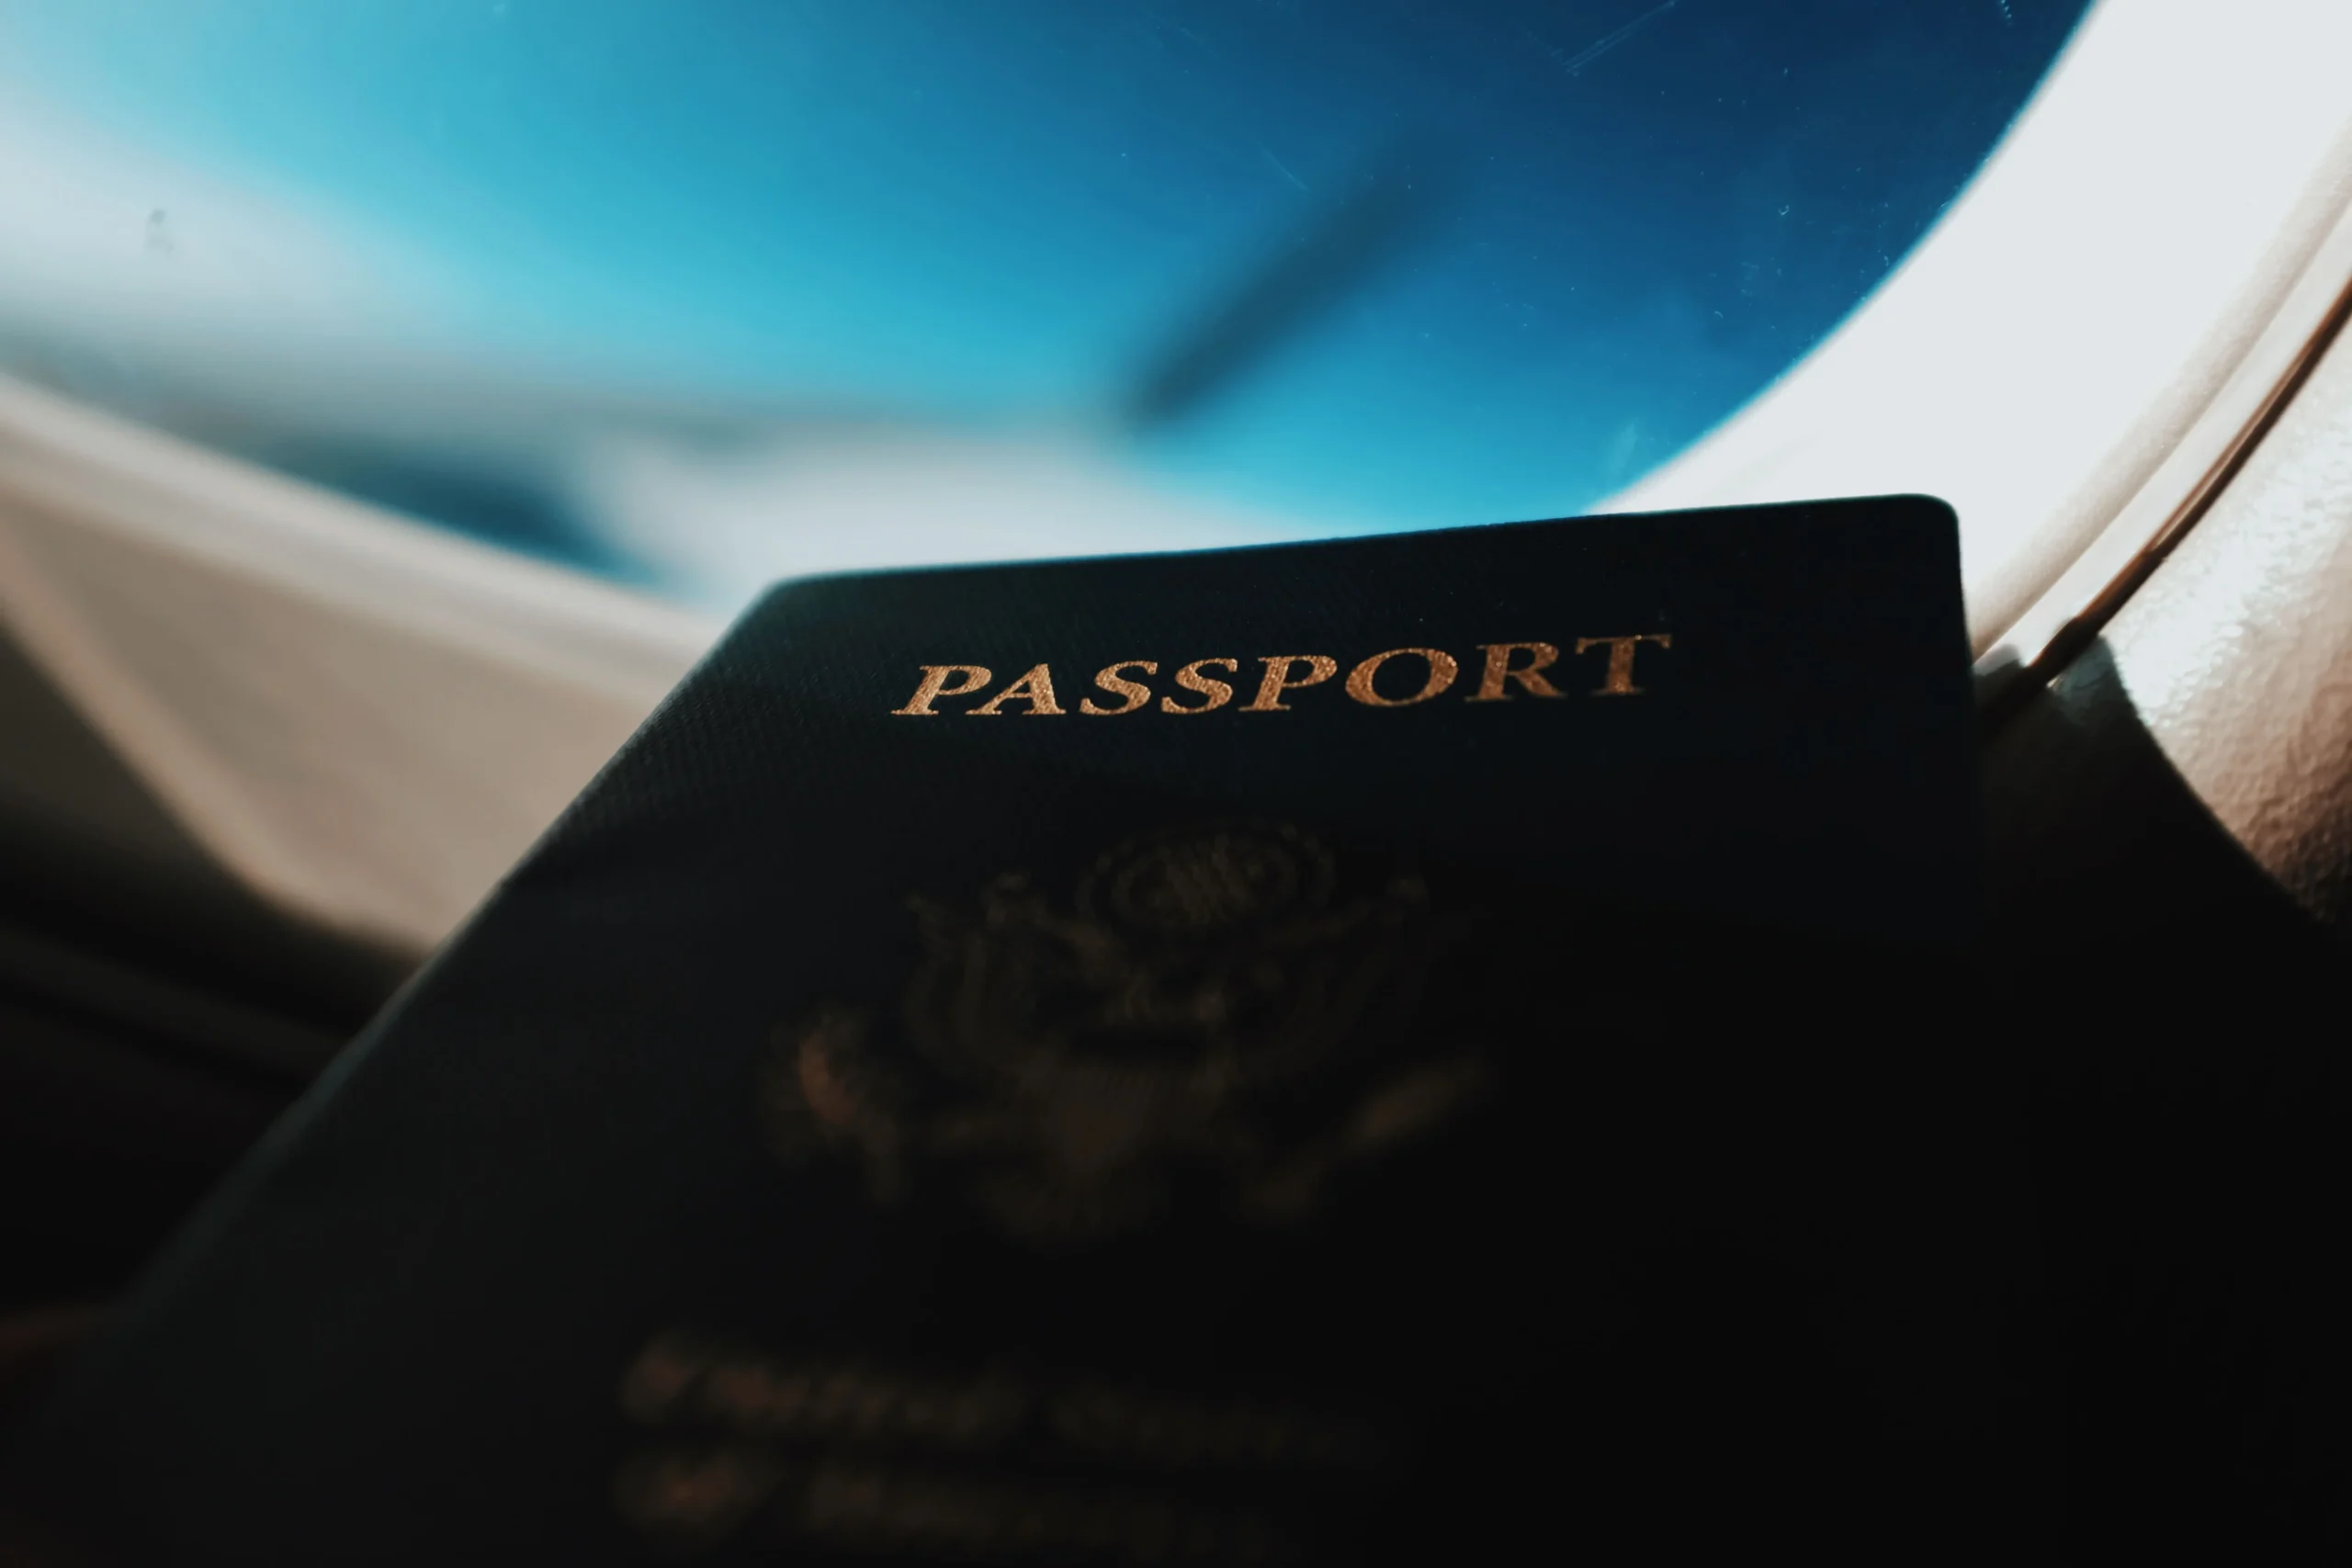 Pasaporte en un avión - Certificado Covid - CertificadoElectronico.es